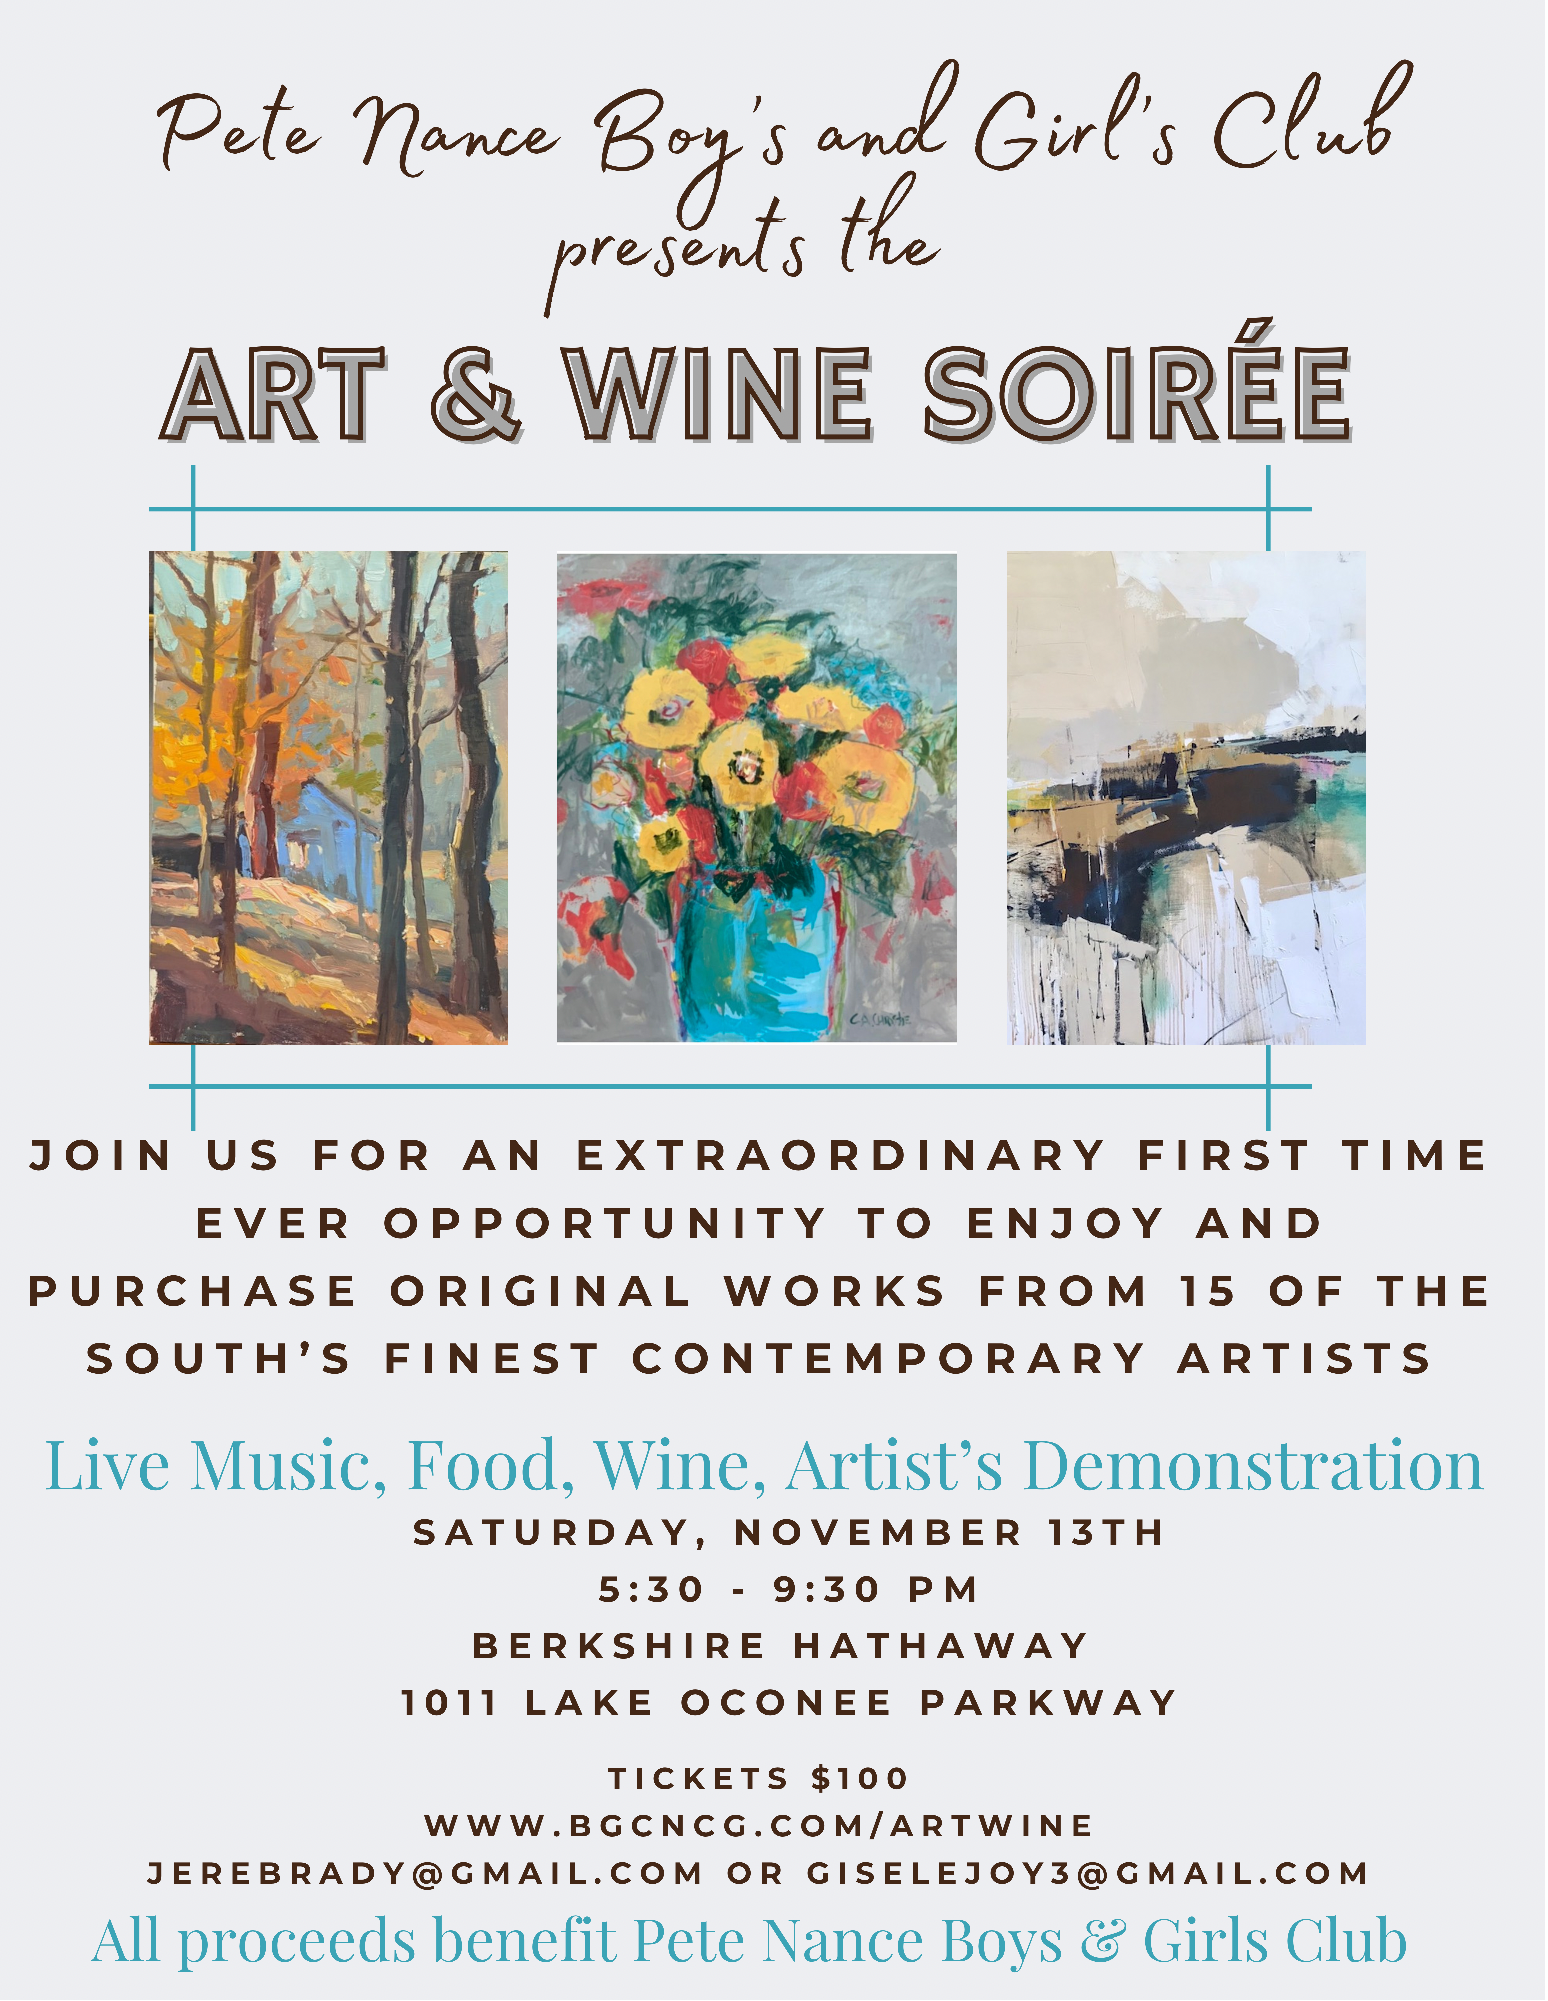 Art & Wine Soiree flyer